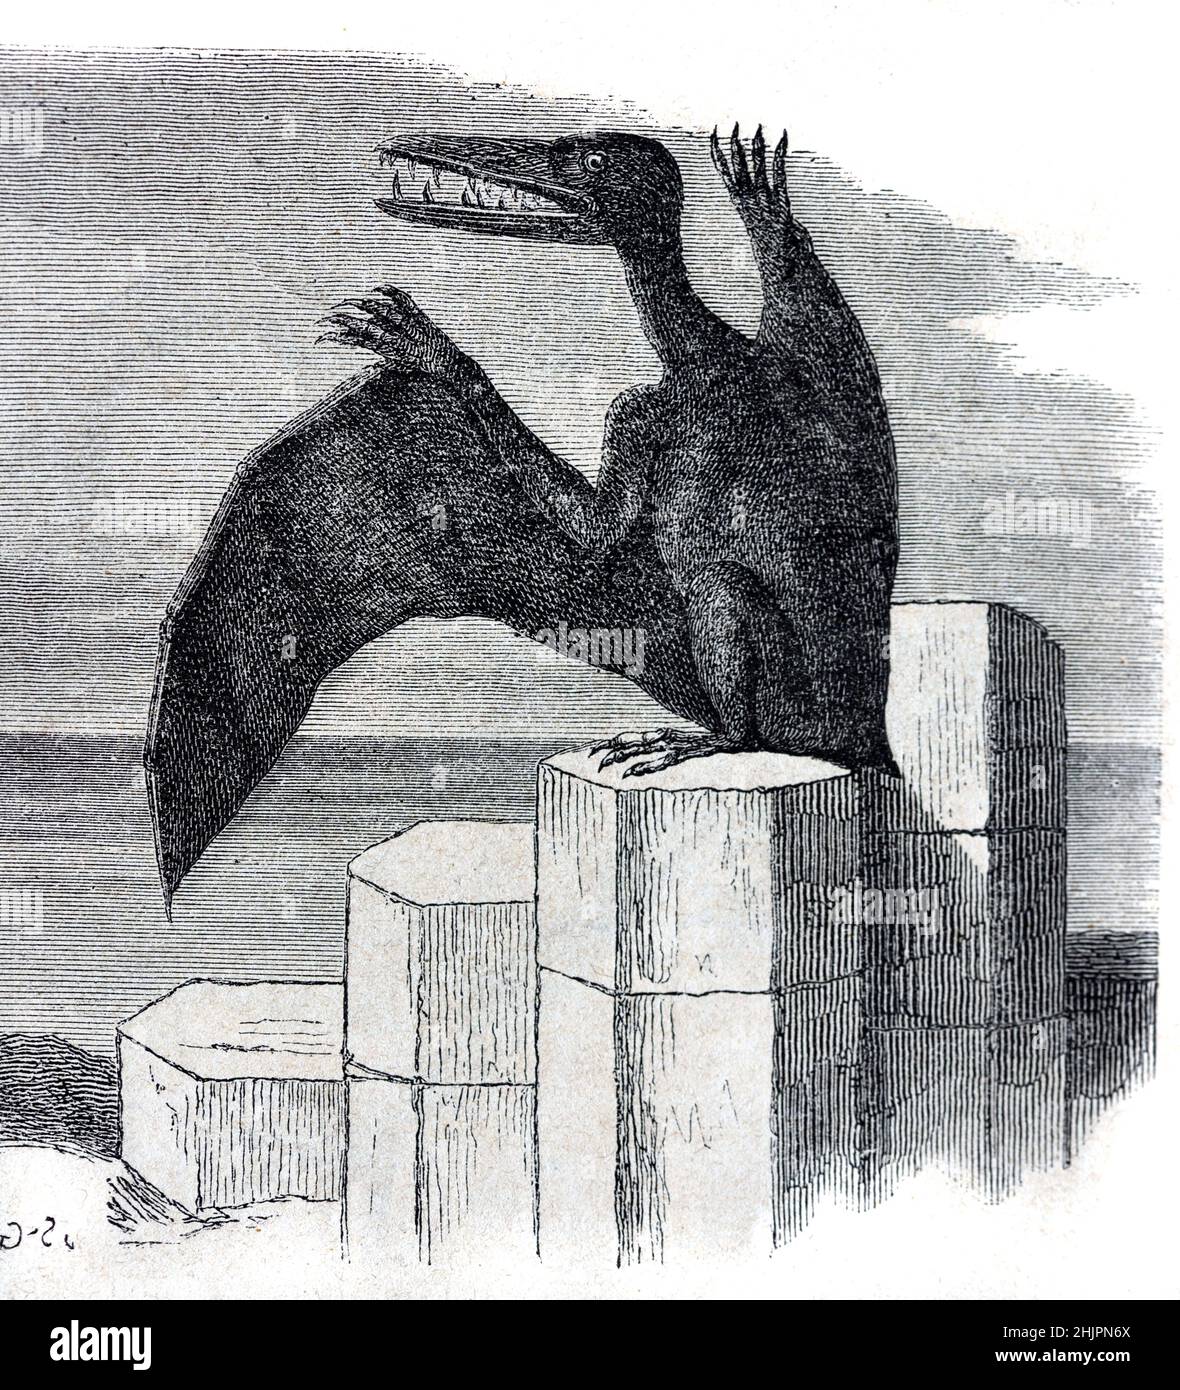 Frühe künstlerische Darstellung eines Pterodactyl- oder Pterodactylus antiquus, eines ausgestorbenen fliegenden Reptils, des Dinosauriers Pterosaurier oder Pterosauria. Vintage Illustration oder Gravur 1865 Stockfoto